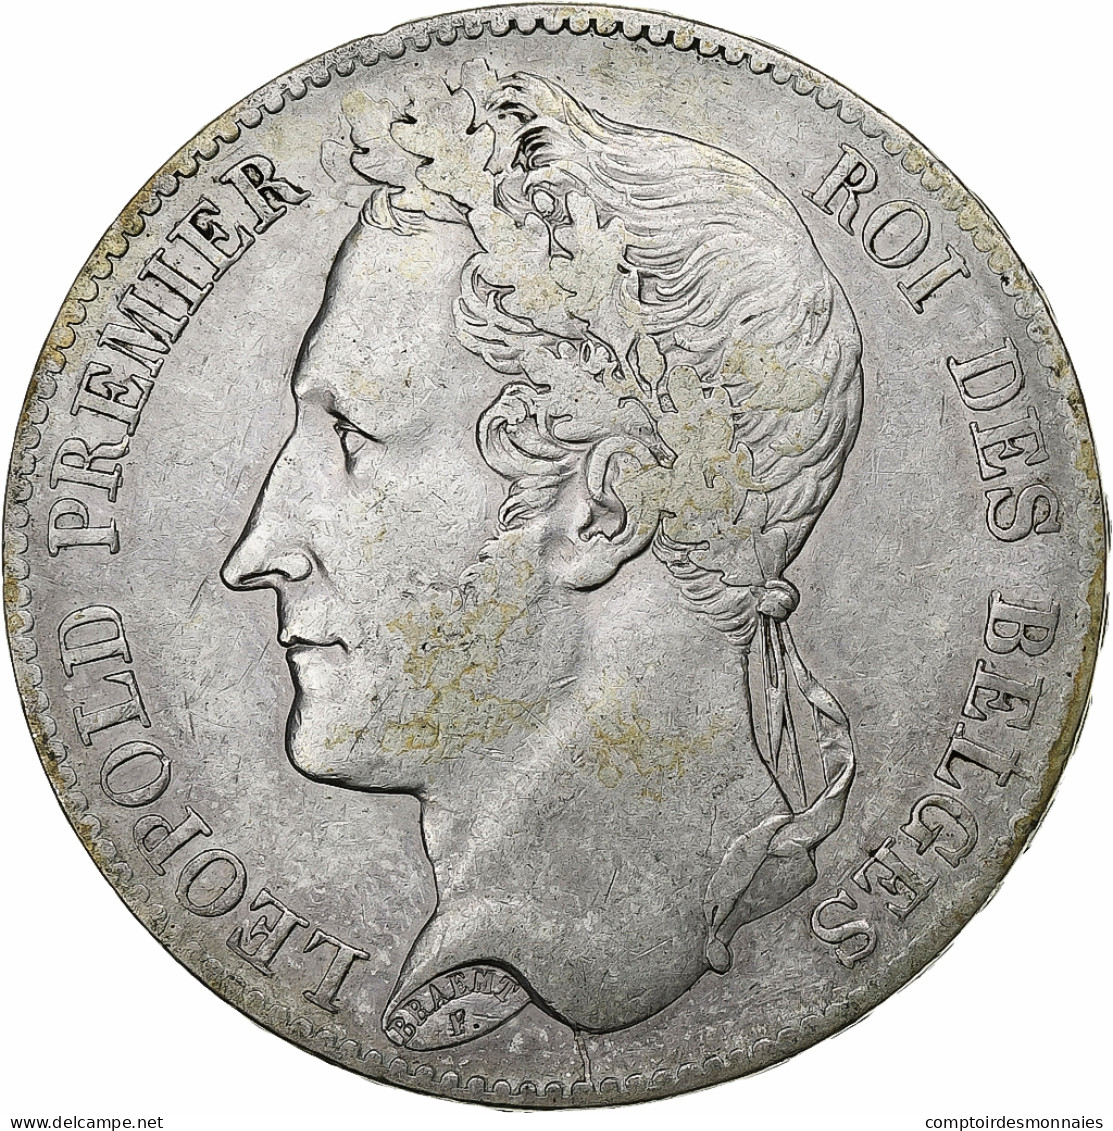 Belgique, Leopold I, 5 Francs, 5 Frank, 1849, Argent, TB+, KM:3.2 - 5 Francs